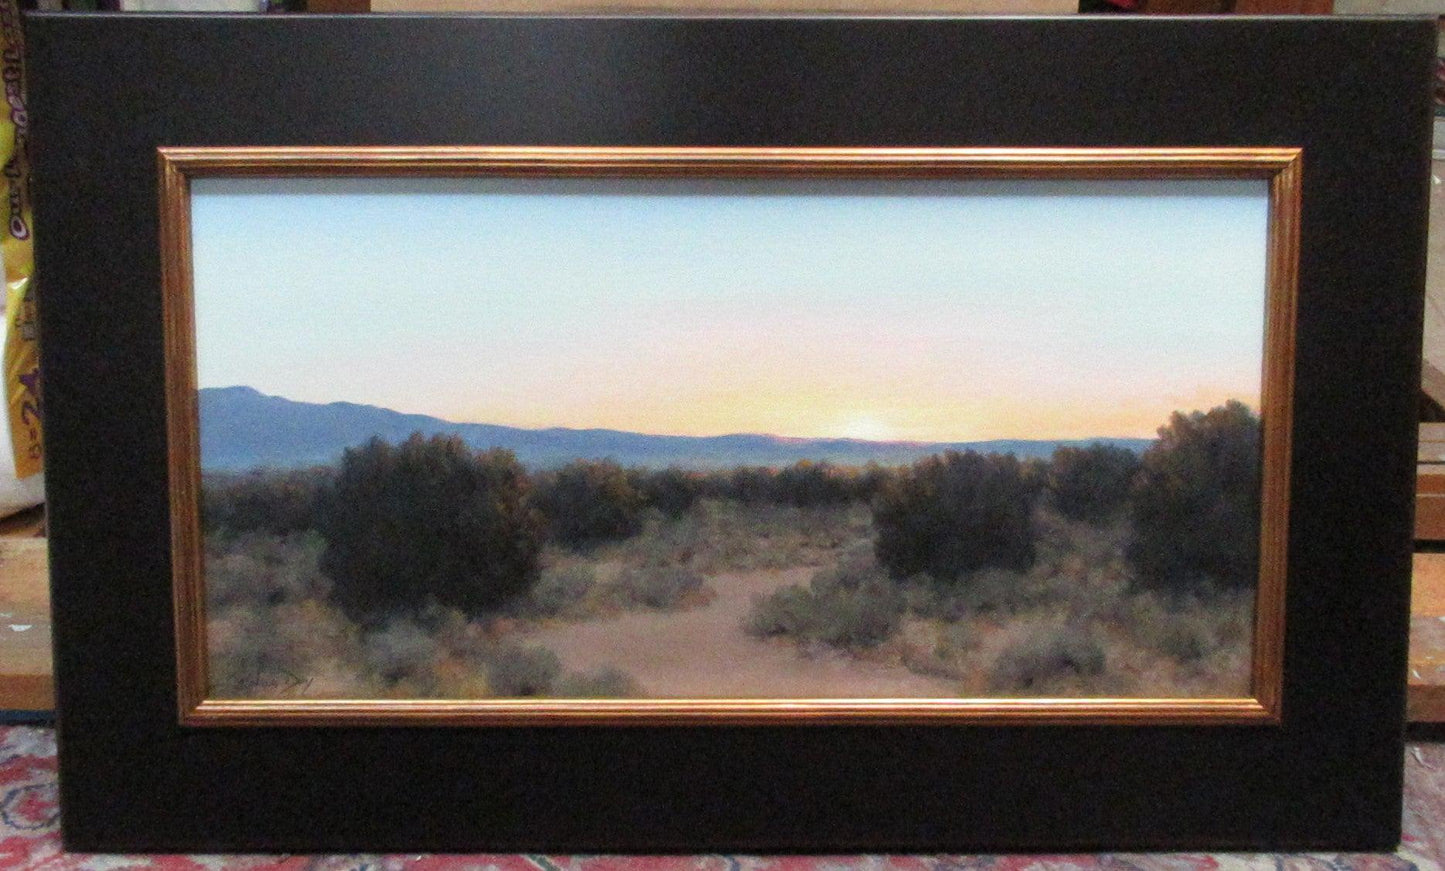 Dawn Breaking-painting-Stephen Day-Sorrel Sky Gallery